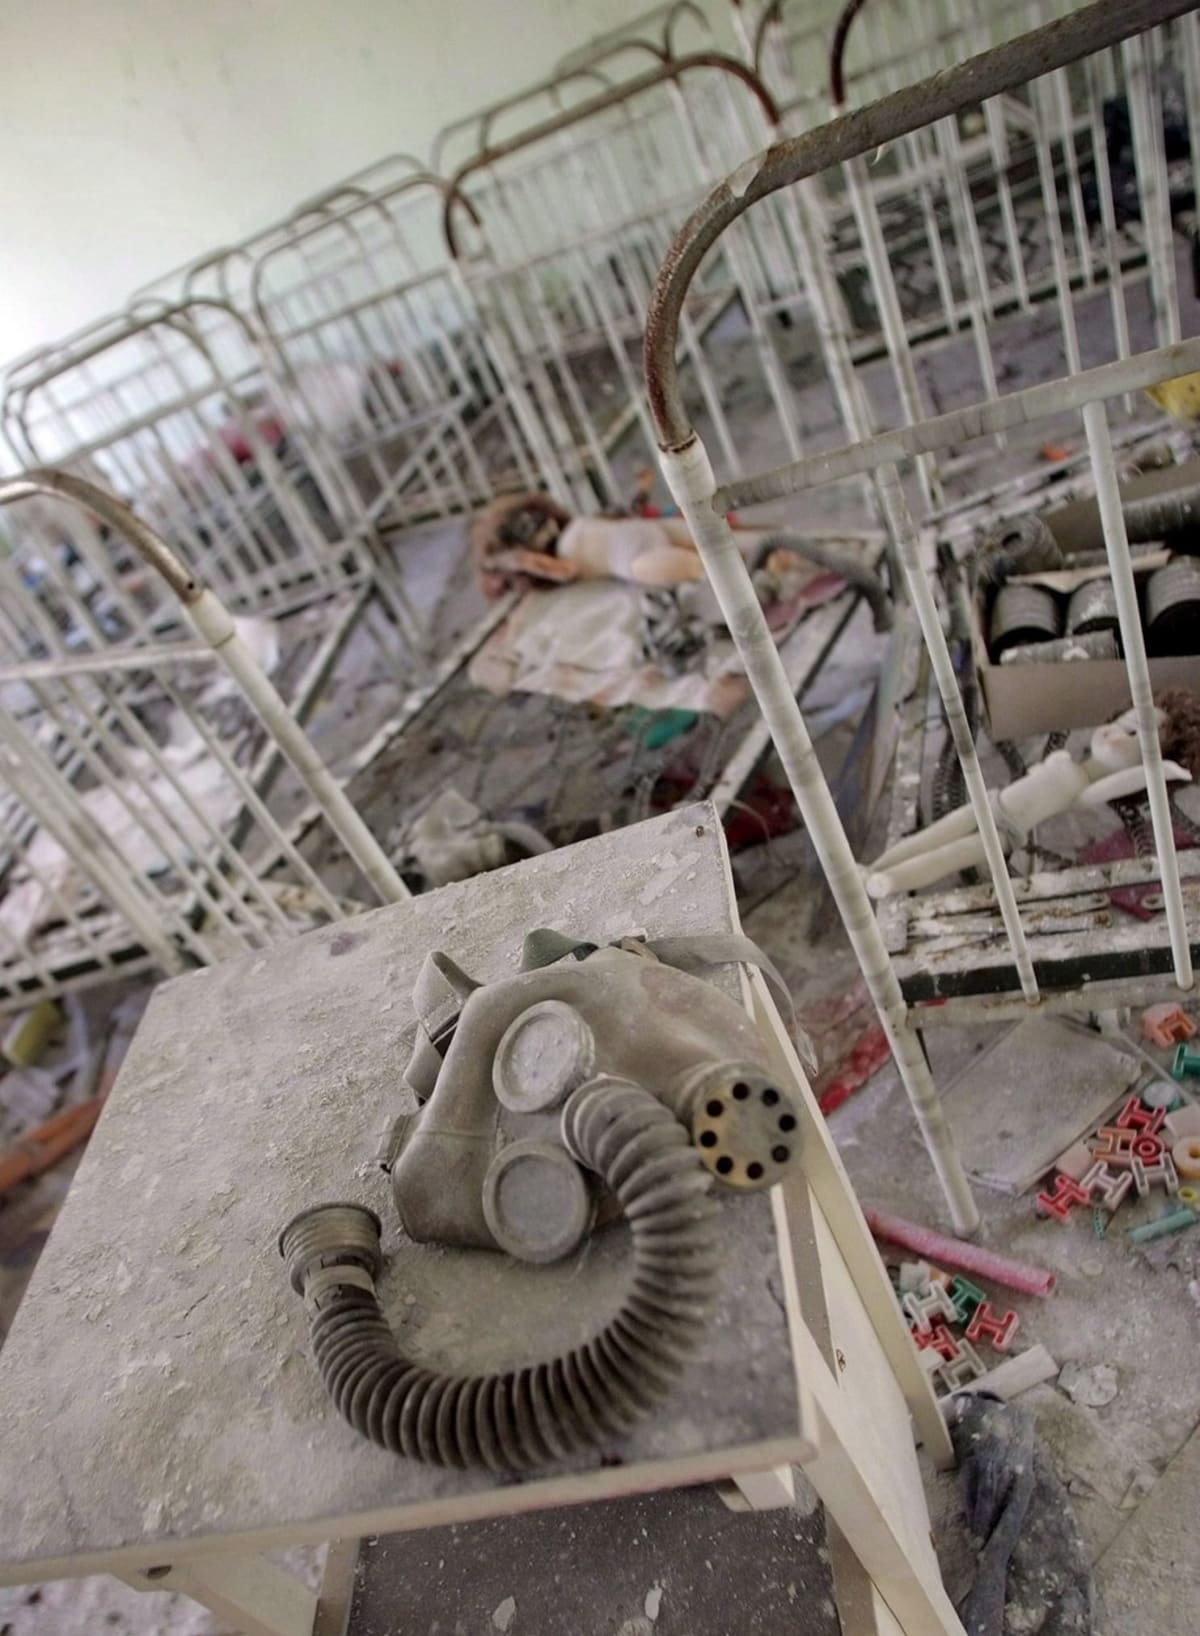 Snímky Černobylu nahánějí hrůzu i po letech